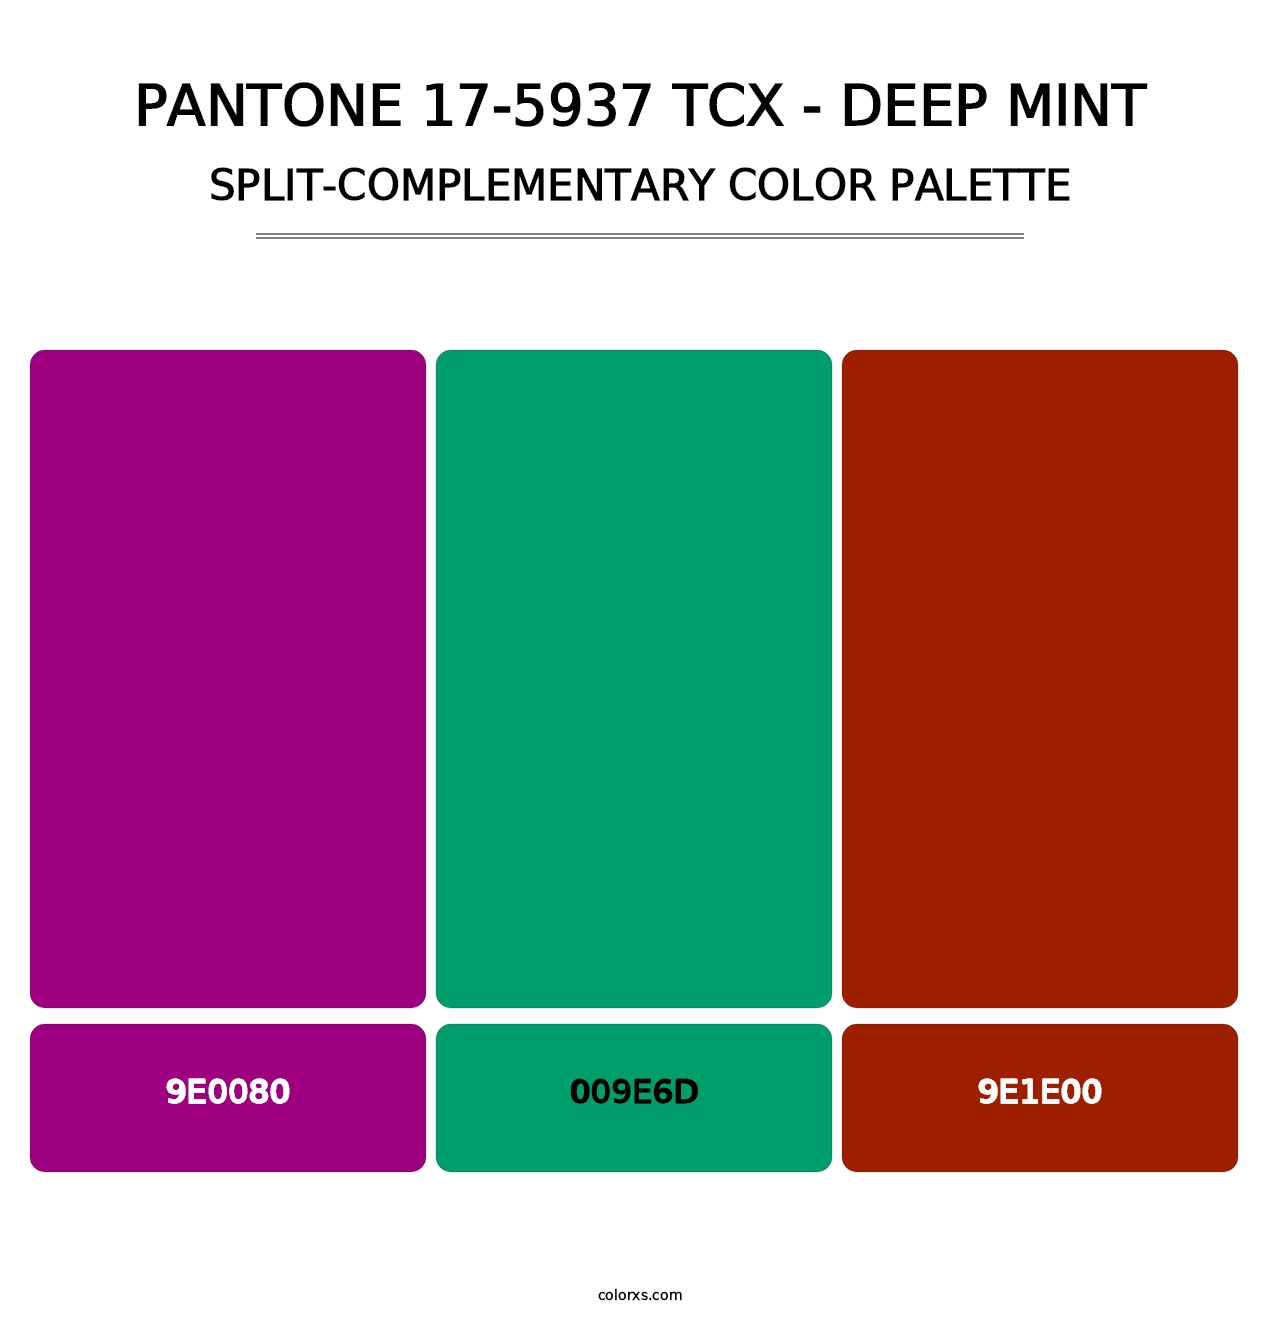 PANTONE 17-5937 TCX - Deep Mint - Split-Complementary Color Palette